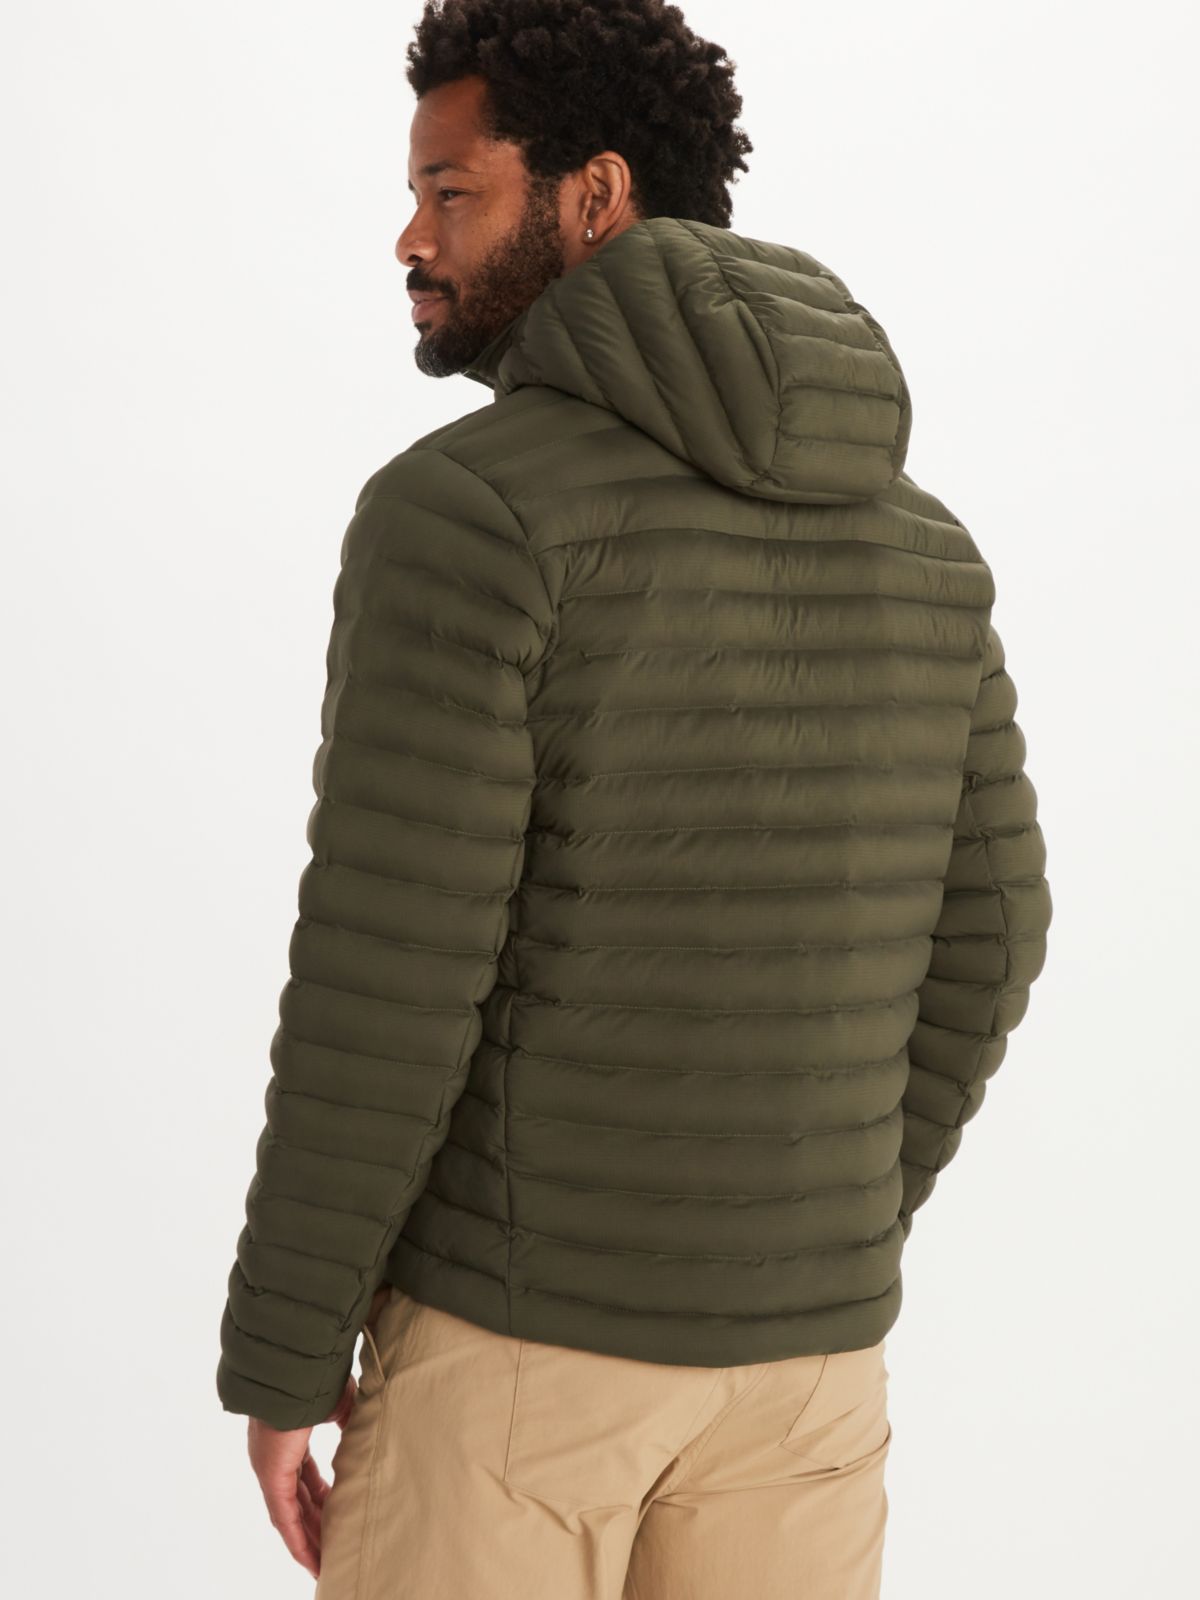 back of man modeling down jacket